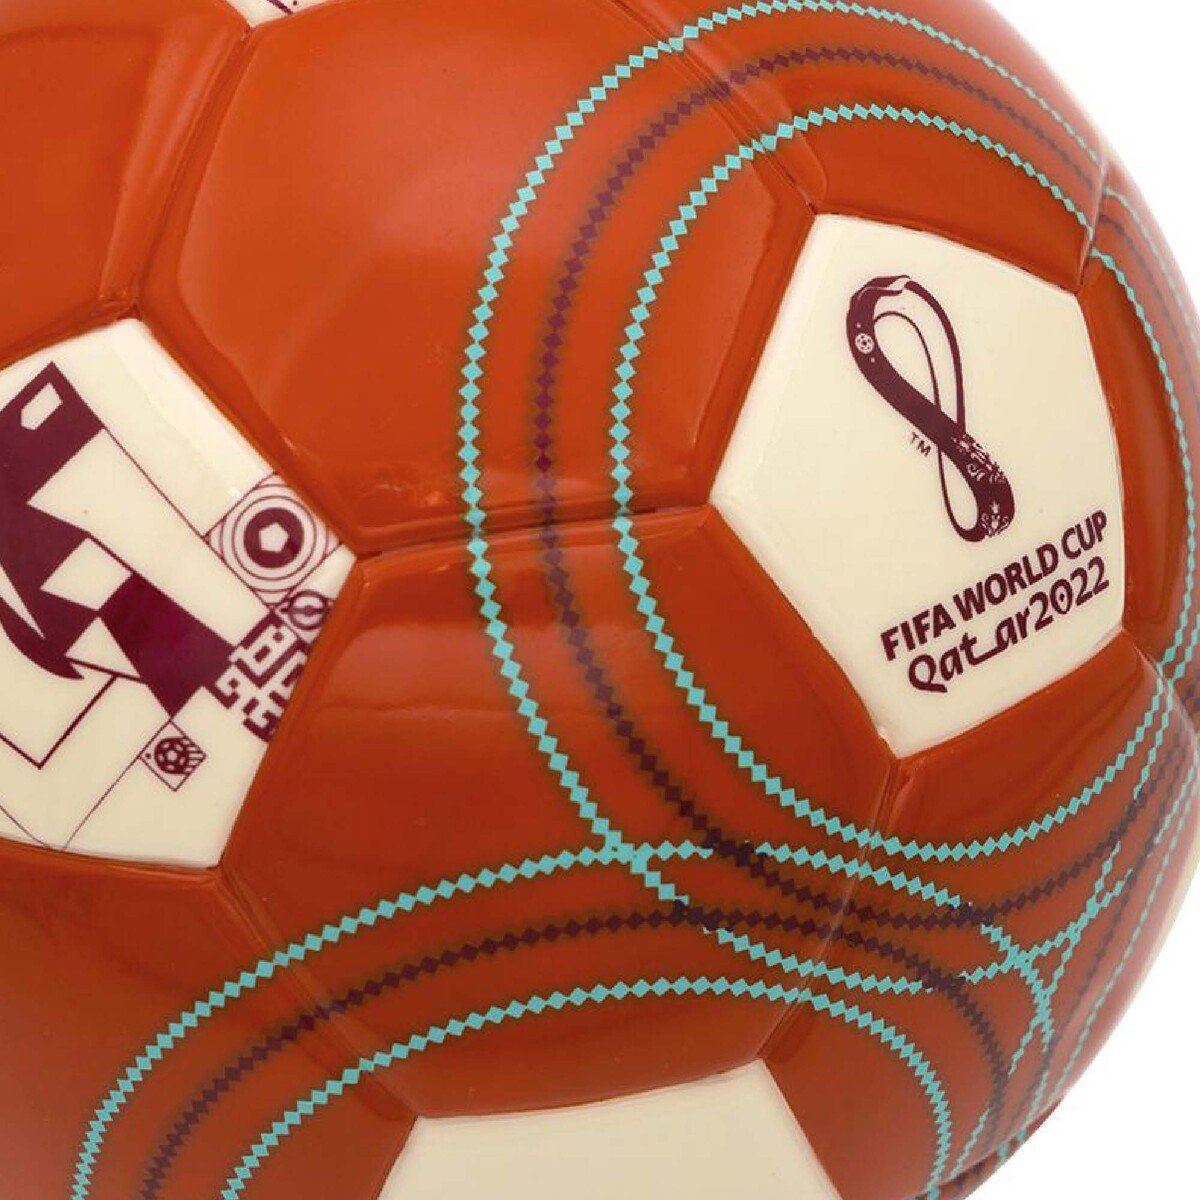 Fifa World Cup Qatar2022 Mini Football FL0410